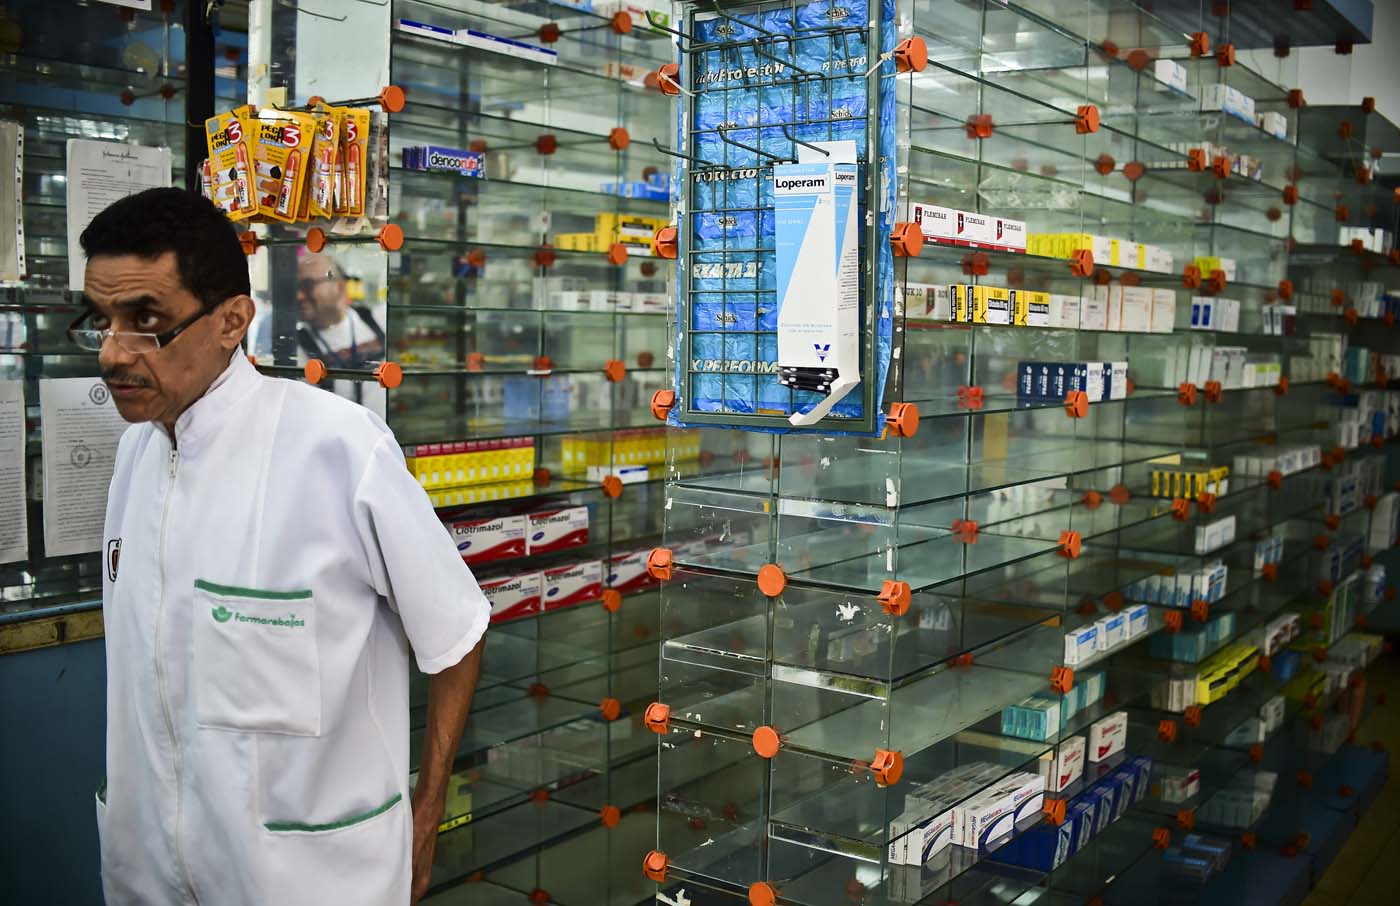 Los estantes de las farmacias continúan vacíos (Foto archivo)